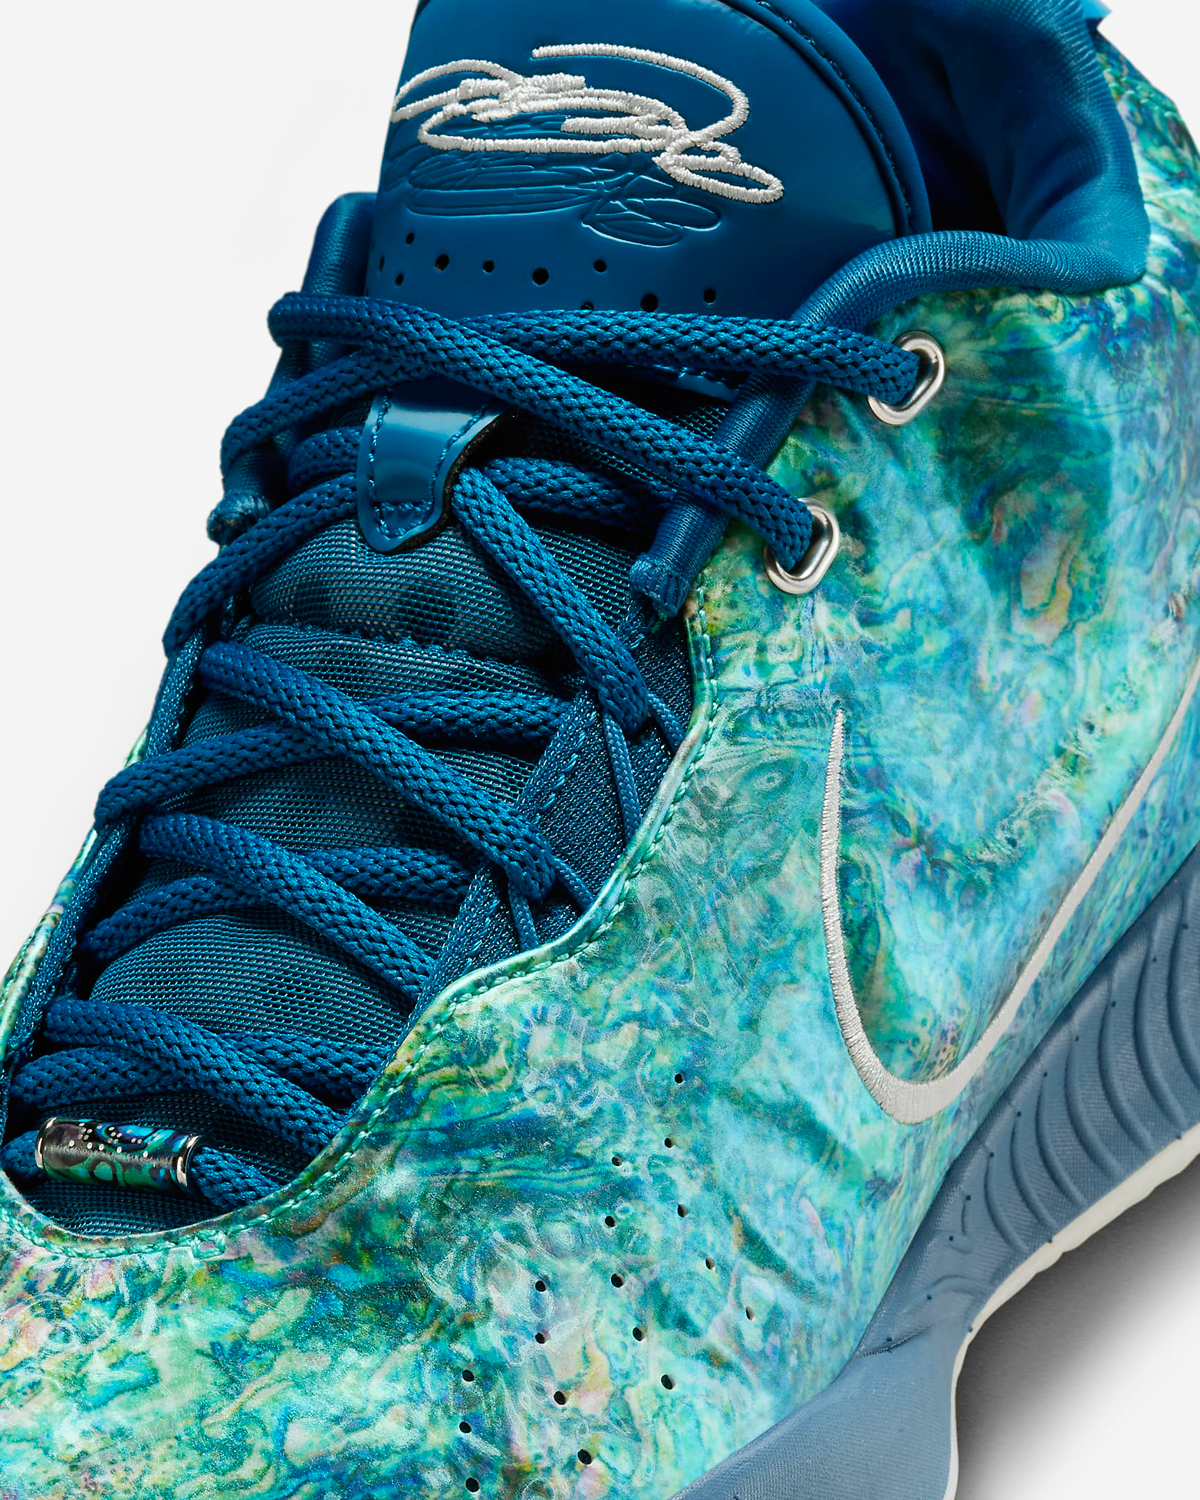 Nike-LeBron-21-Abalone-Pearl-Release-Date-7